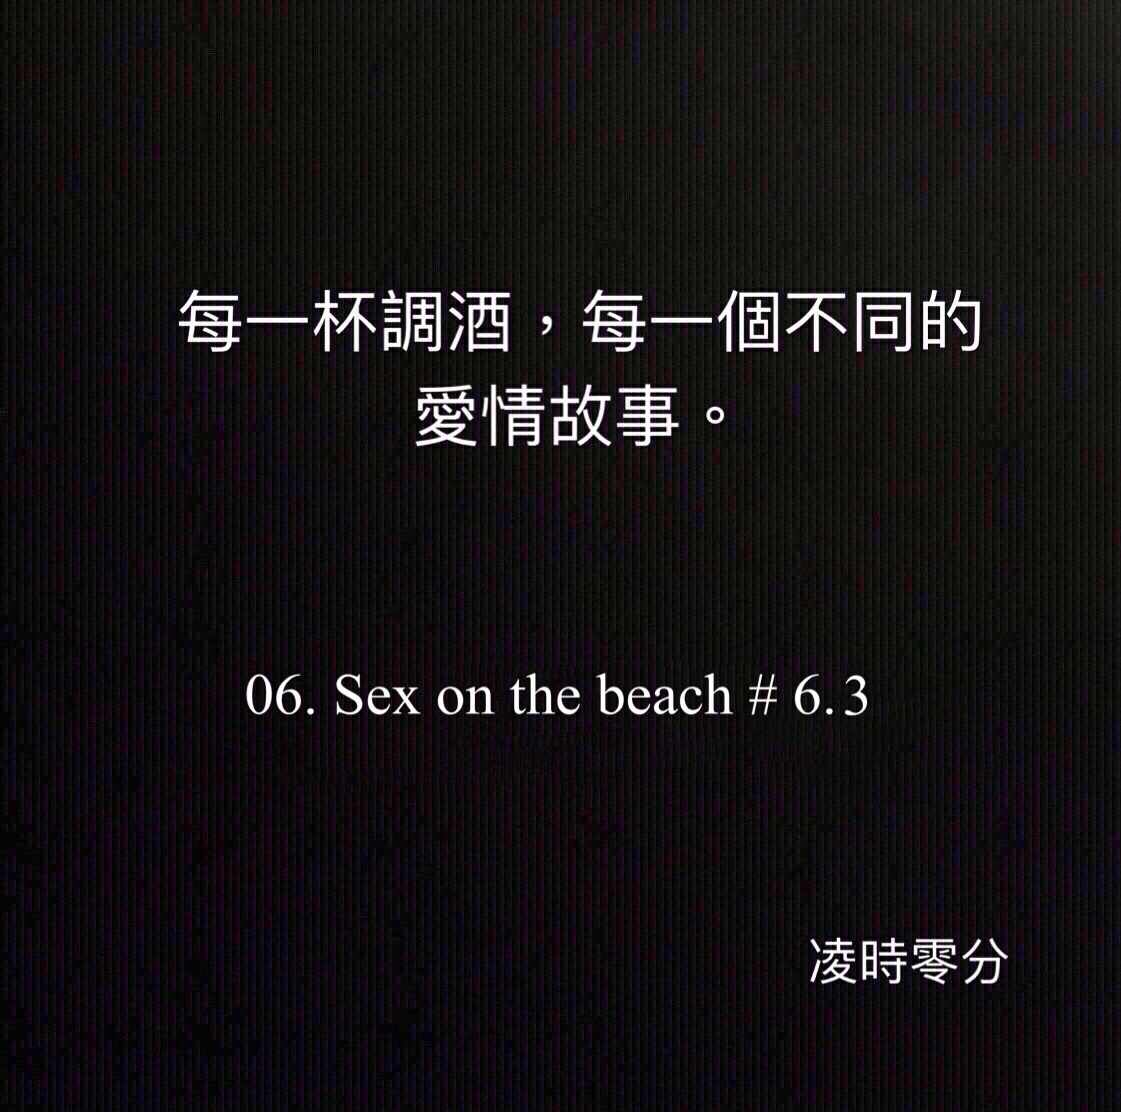 （短篇故事）每一杯調酒，每一個不同的愛情故事 06. Sex on the beach #6.3